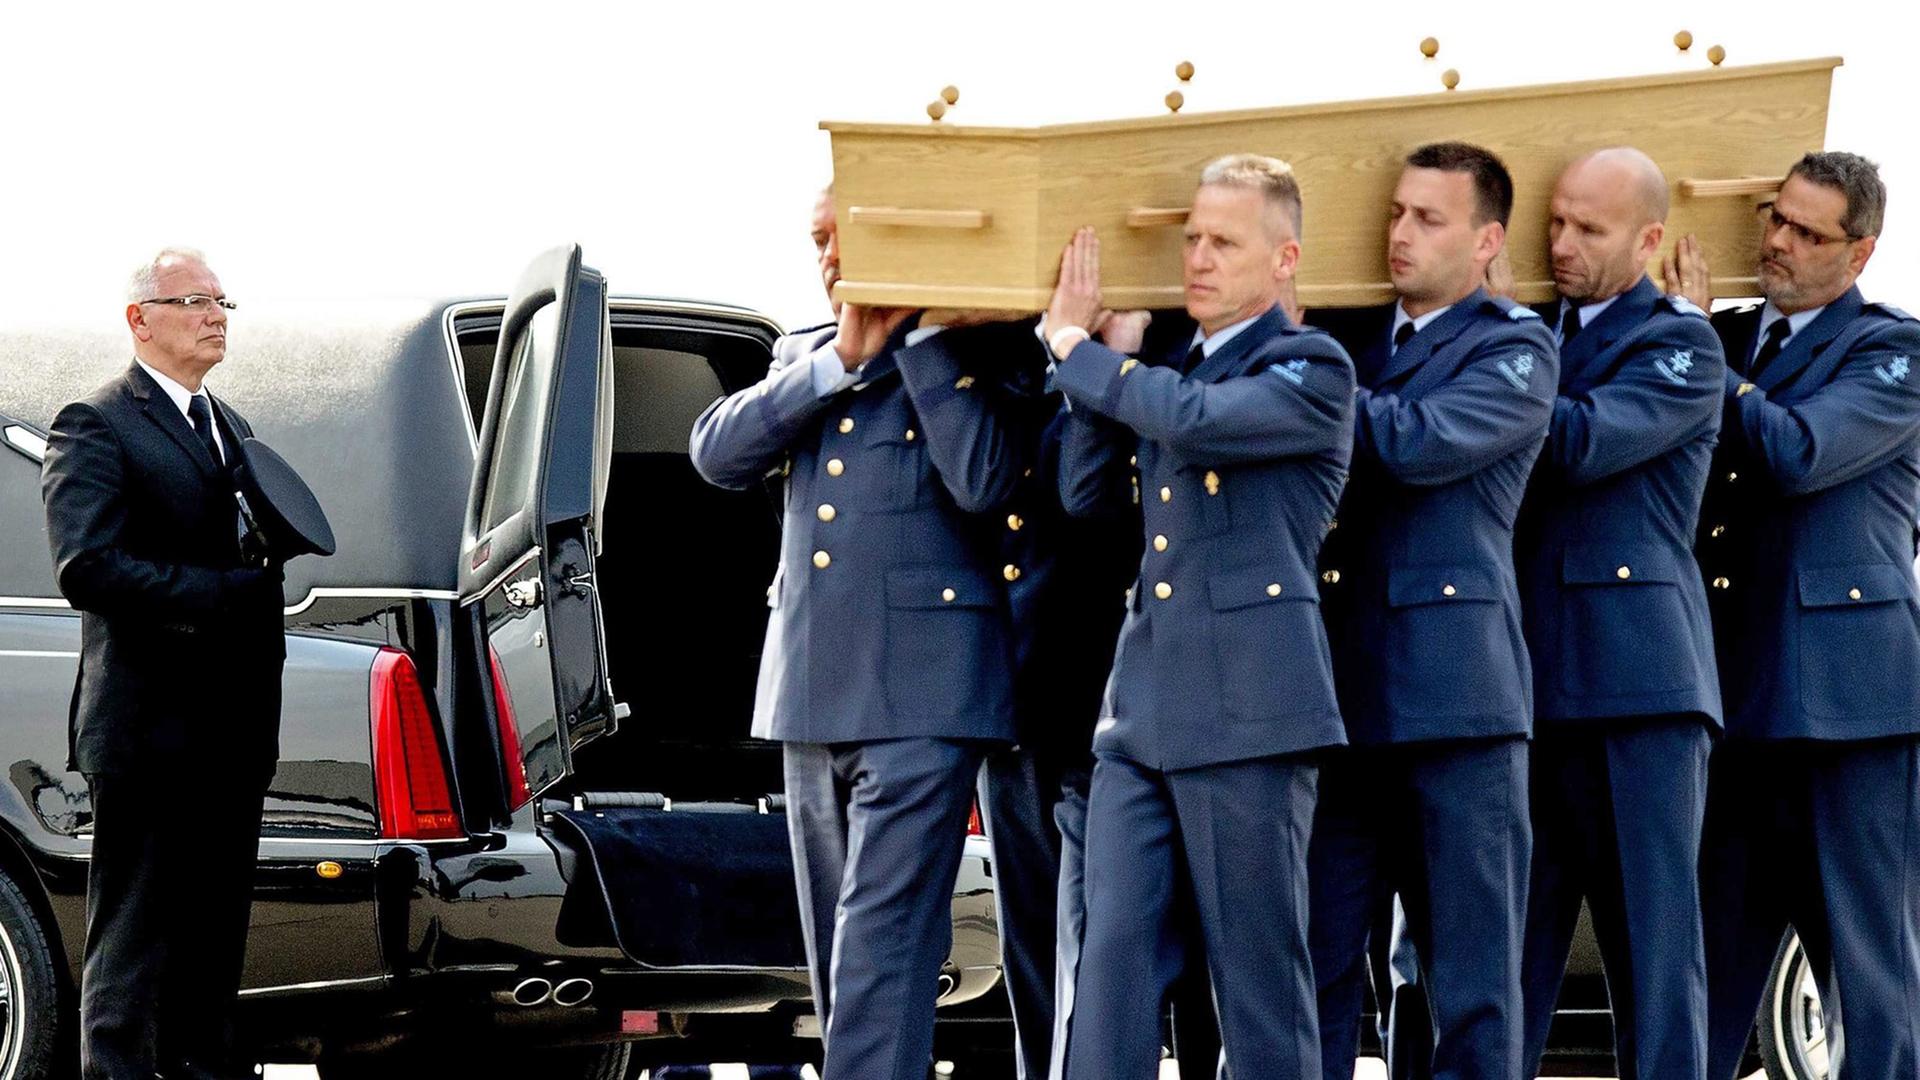 Acht Militärangehörige in blauen Uniformen tragen einen Holzsarg auf ihren Schultern, im Hintergrund das schwarze Fahrzeug eines Bestatters mit geöffneten Hecktüren.